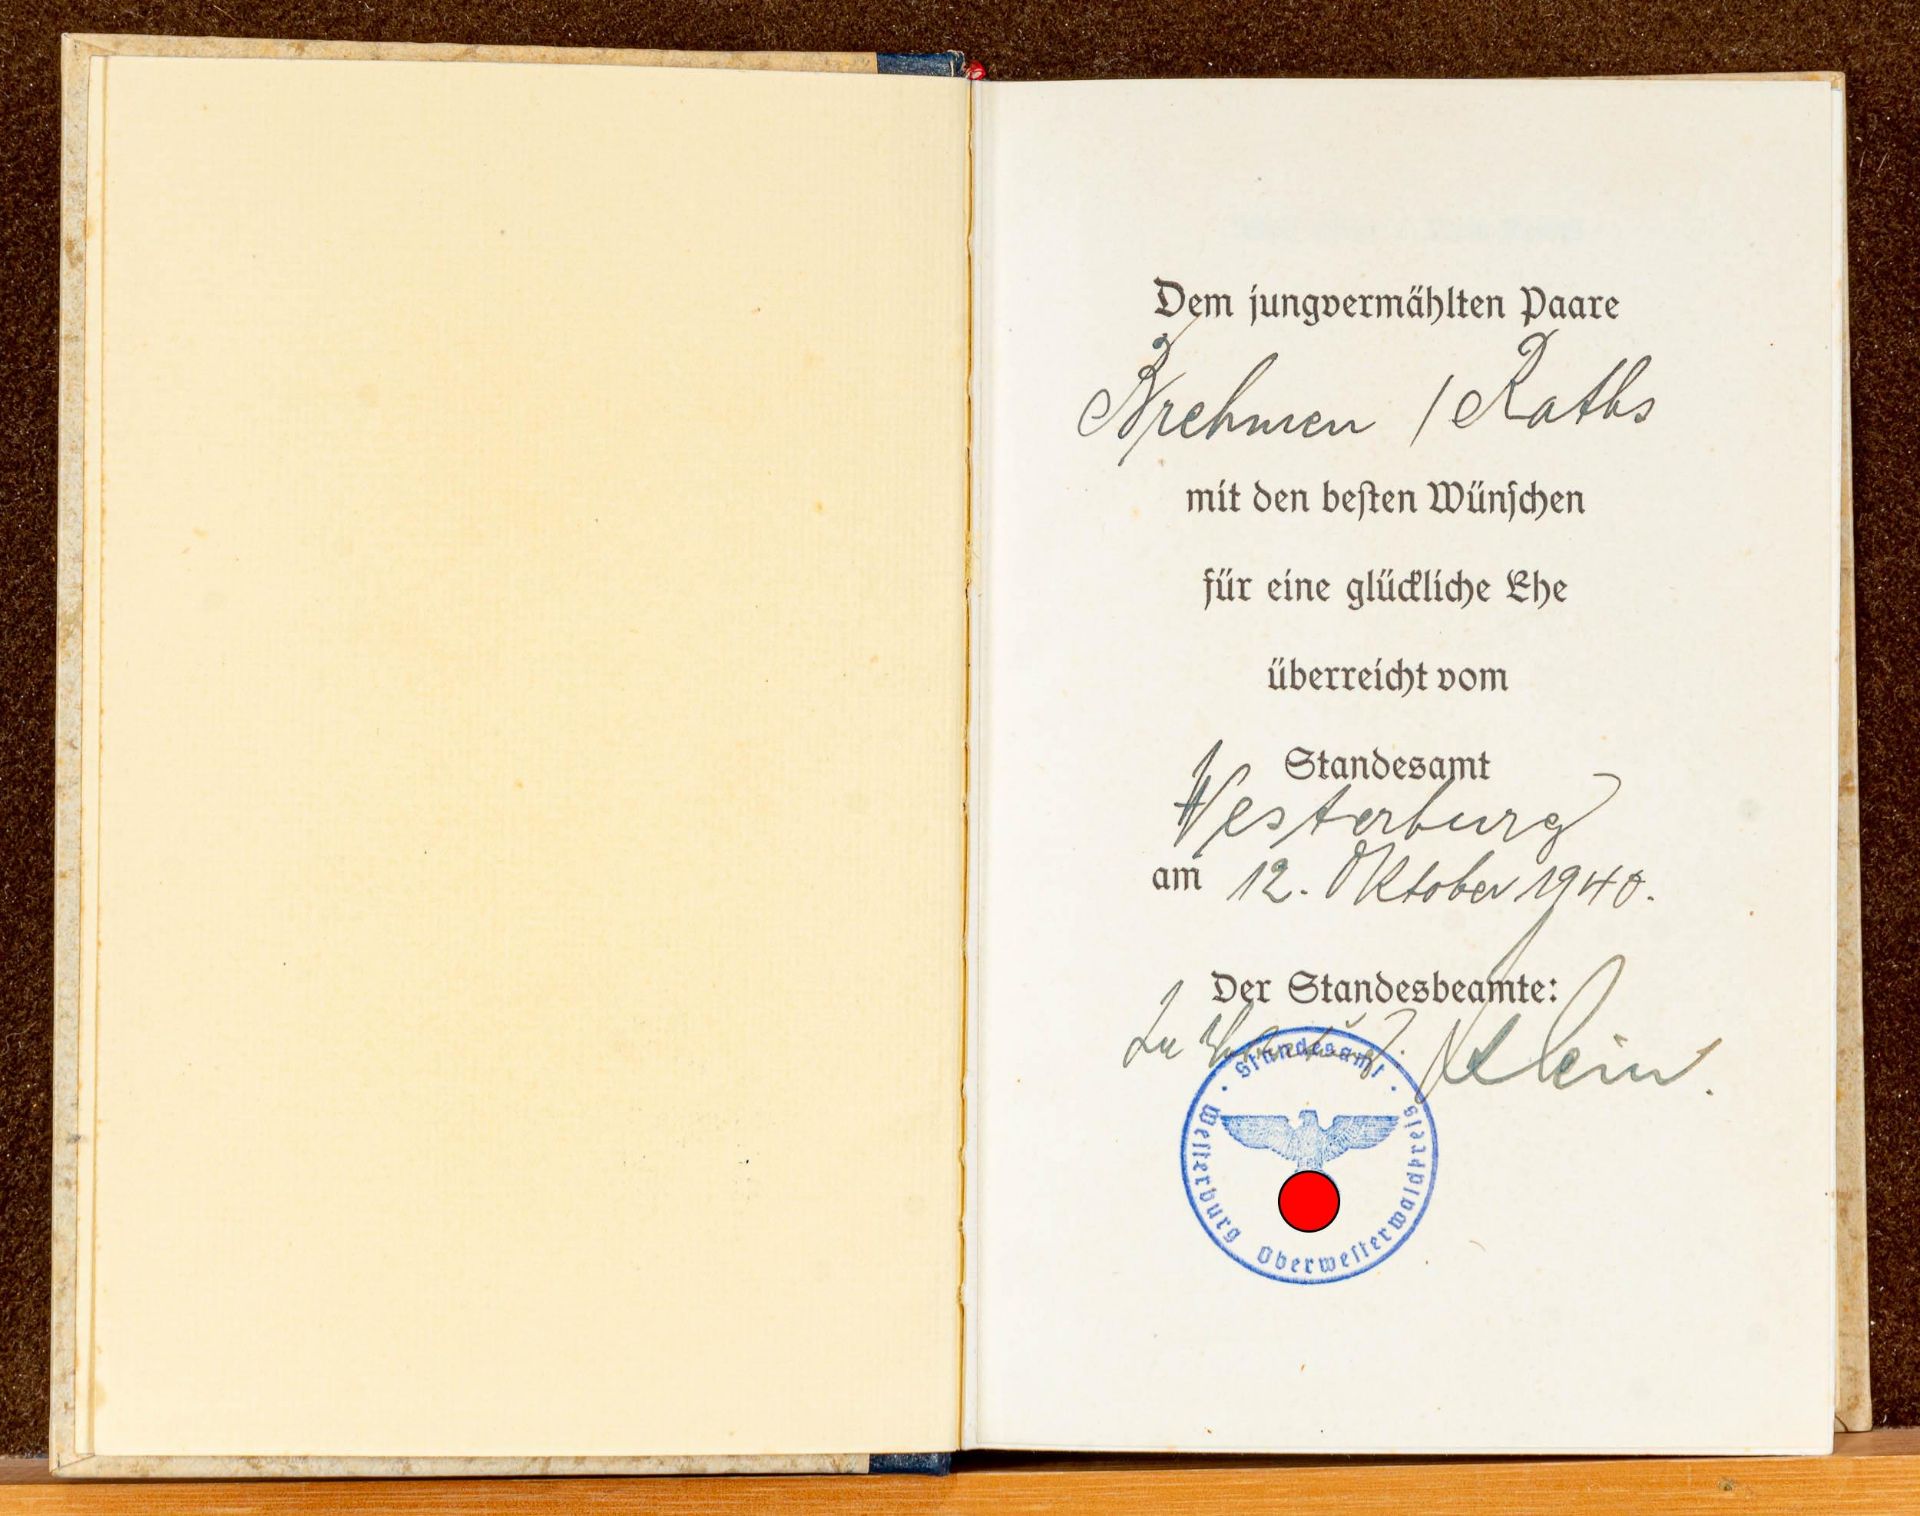 A.H. "Mein Kampf", Hochzeitsausgabe, gegeben am 12. 10. 1940, 524/ 528000 Auflage. Guter, gebraucht - Bild 2 aus 3